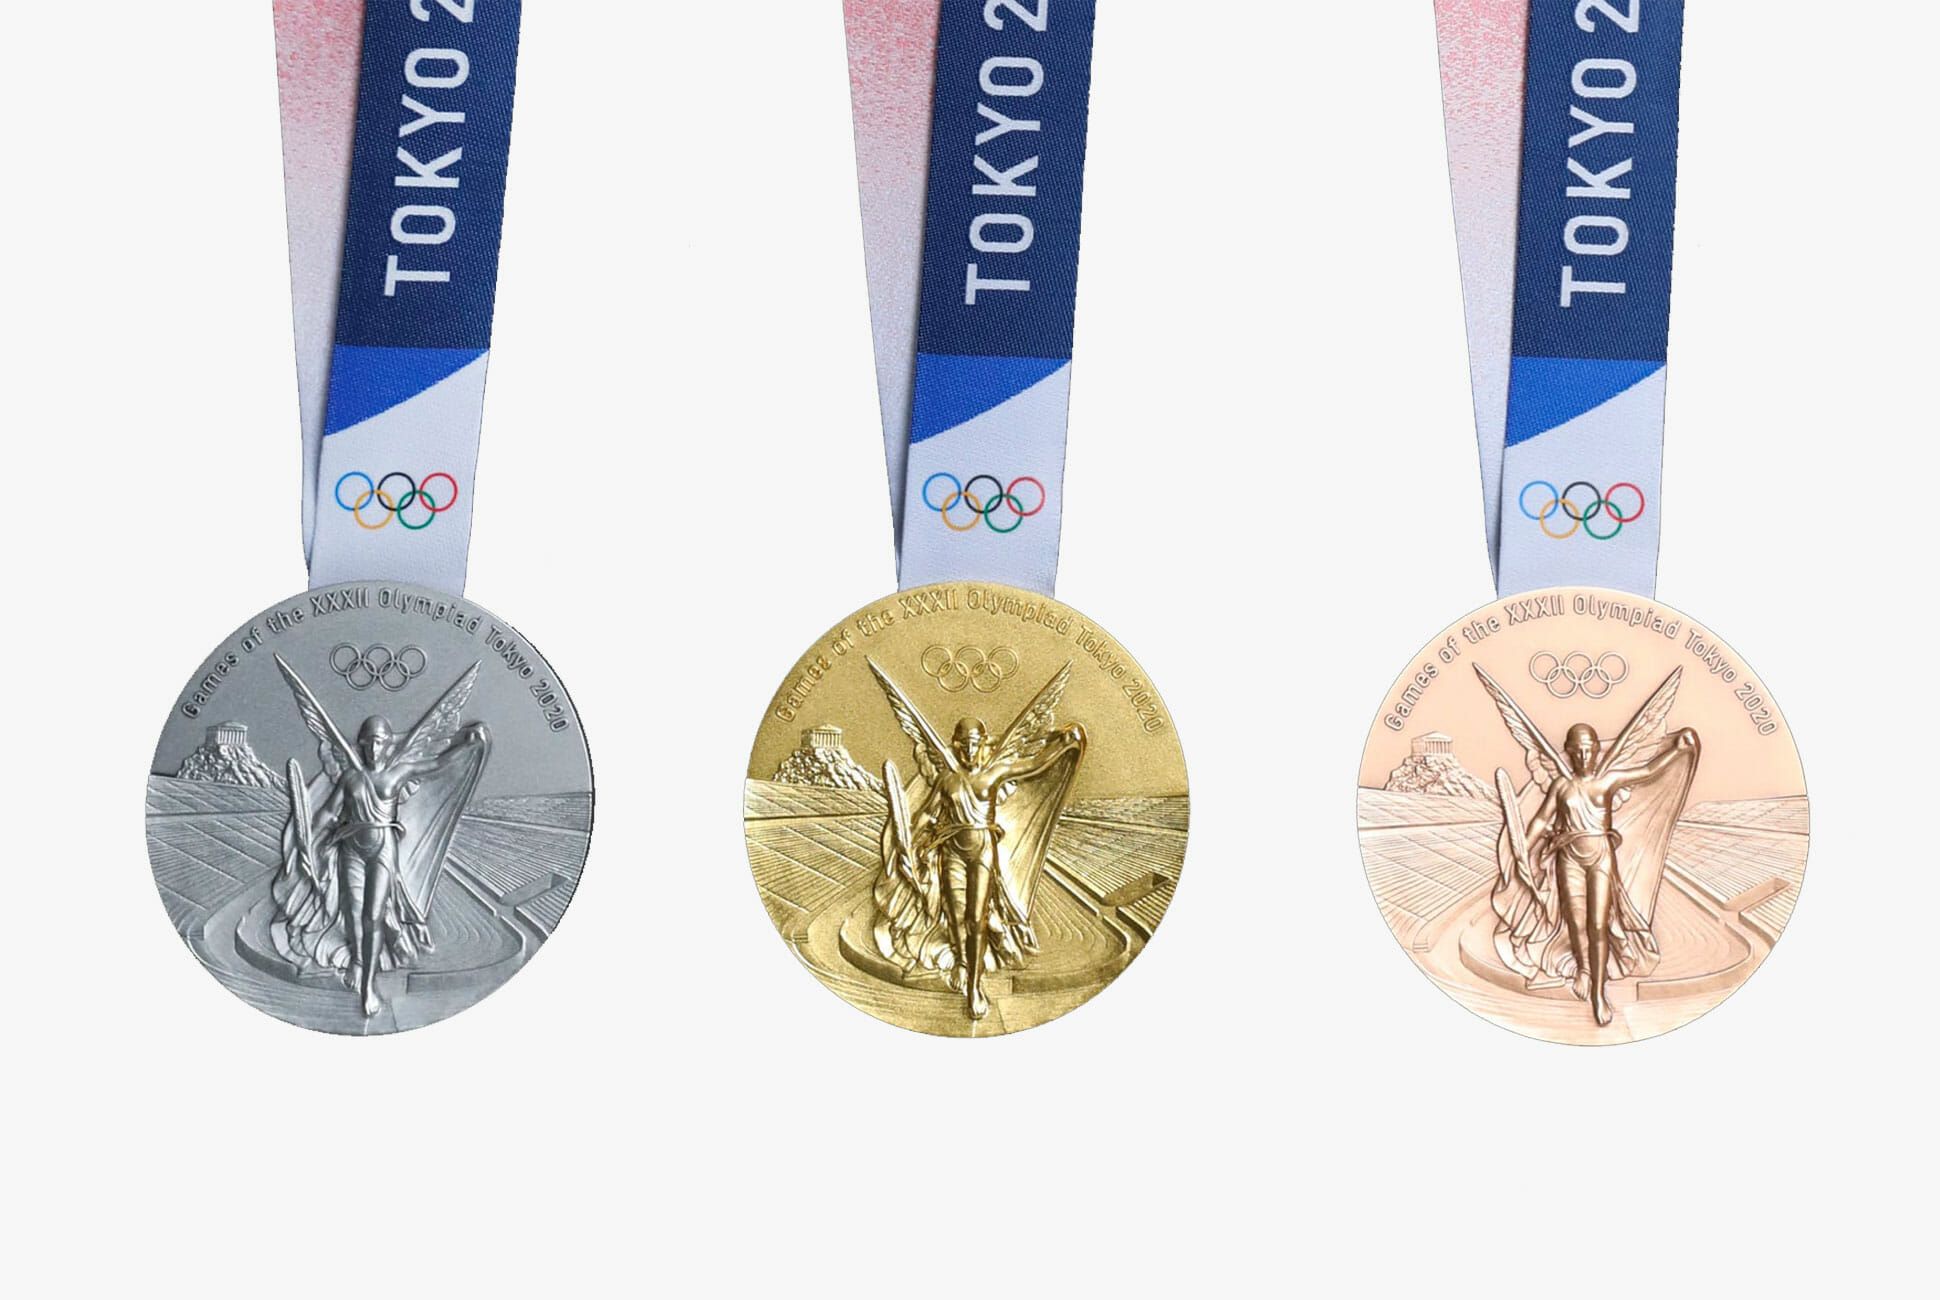 Bộ huy chương chính thức của Olympic 2020 có gì đặc biệt? - Ảnh 1.